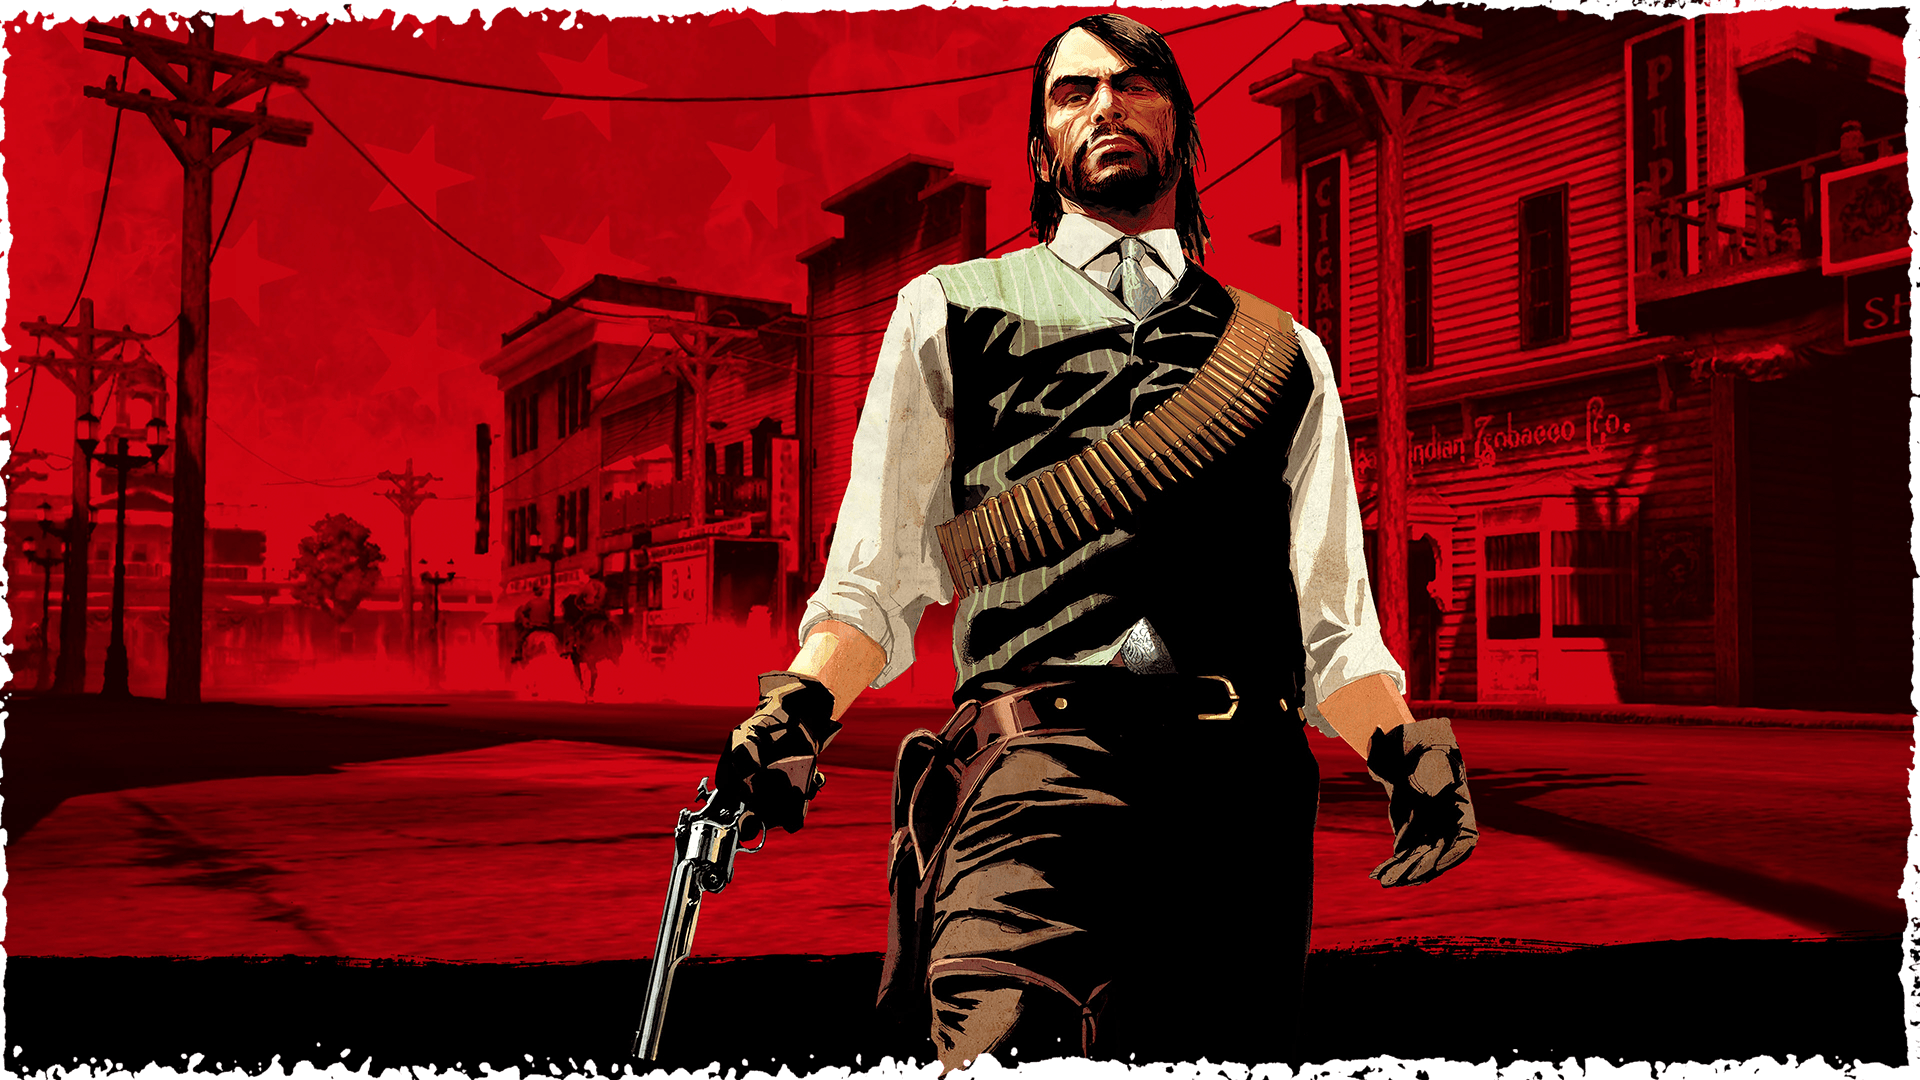 Red Dead Redemption 2 - Rockstar Games